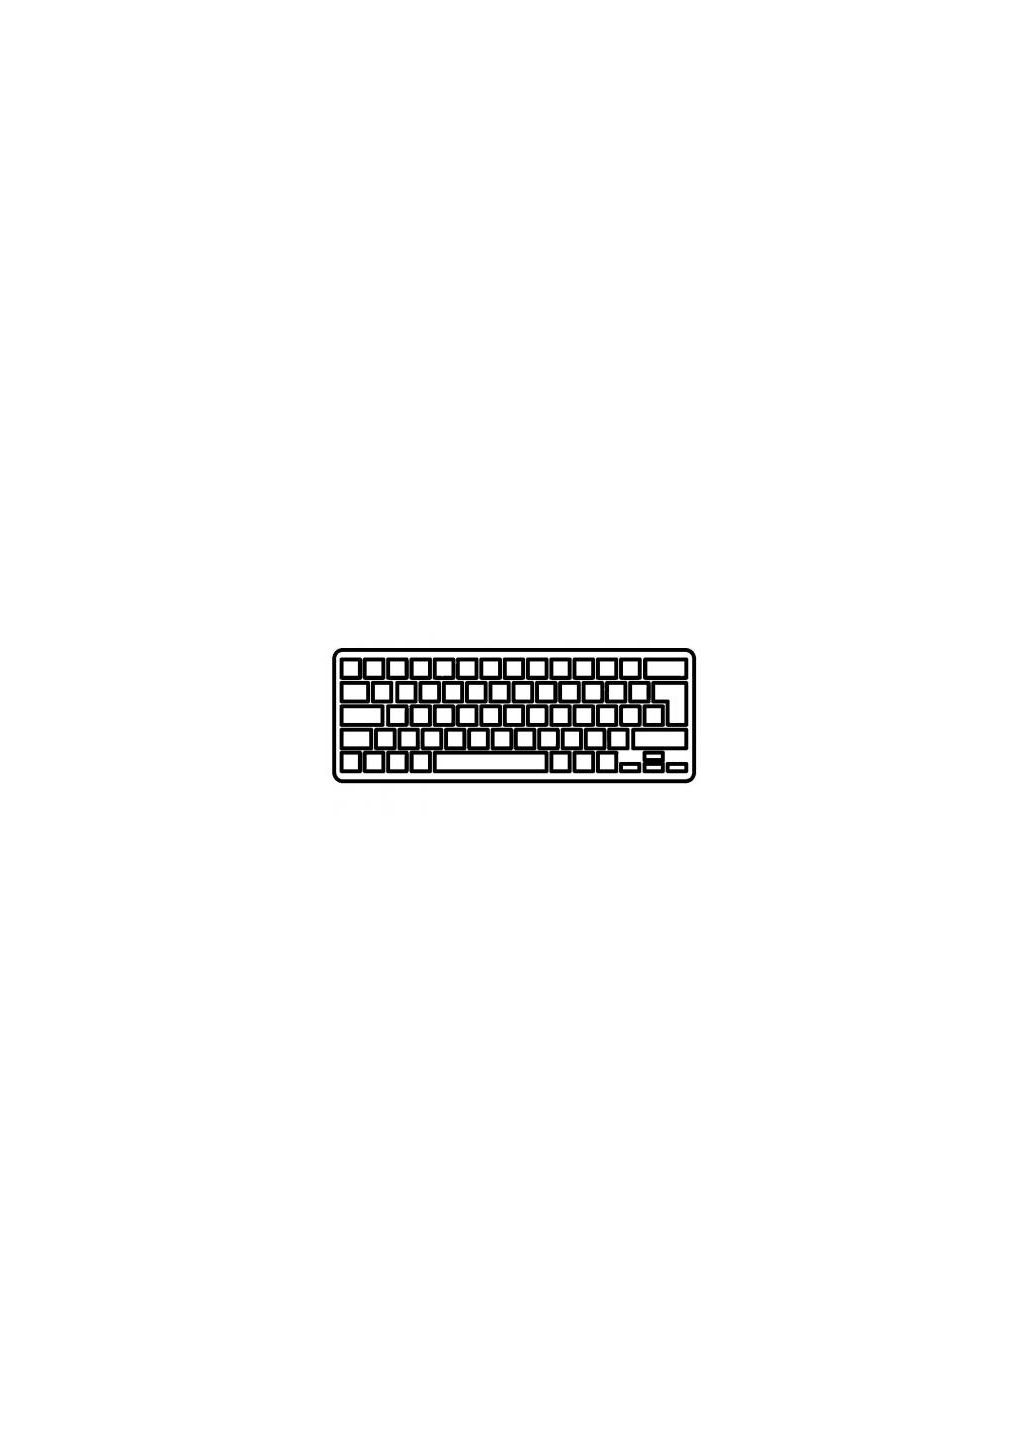 Клавиатура ноутбука Aspire V5471/V5-431/M5-481 черная без рамки подсветкой RU (A43820) Acer aspire v5-471/v5-431/m5-481 черная без рамки подсв (276707536)